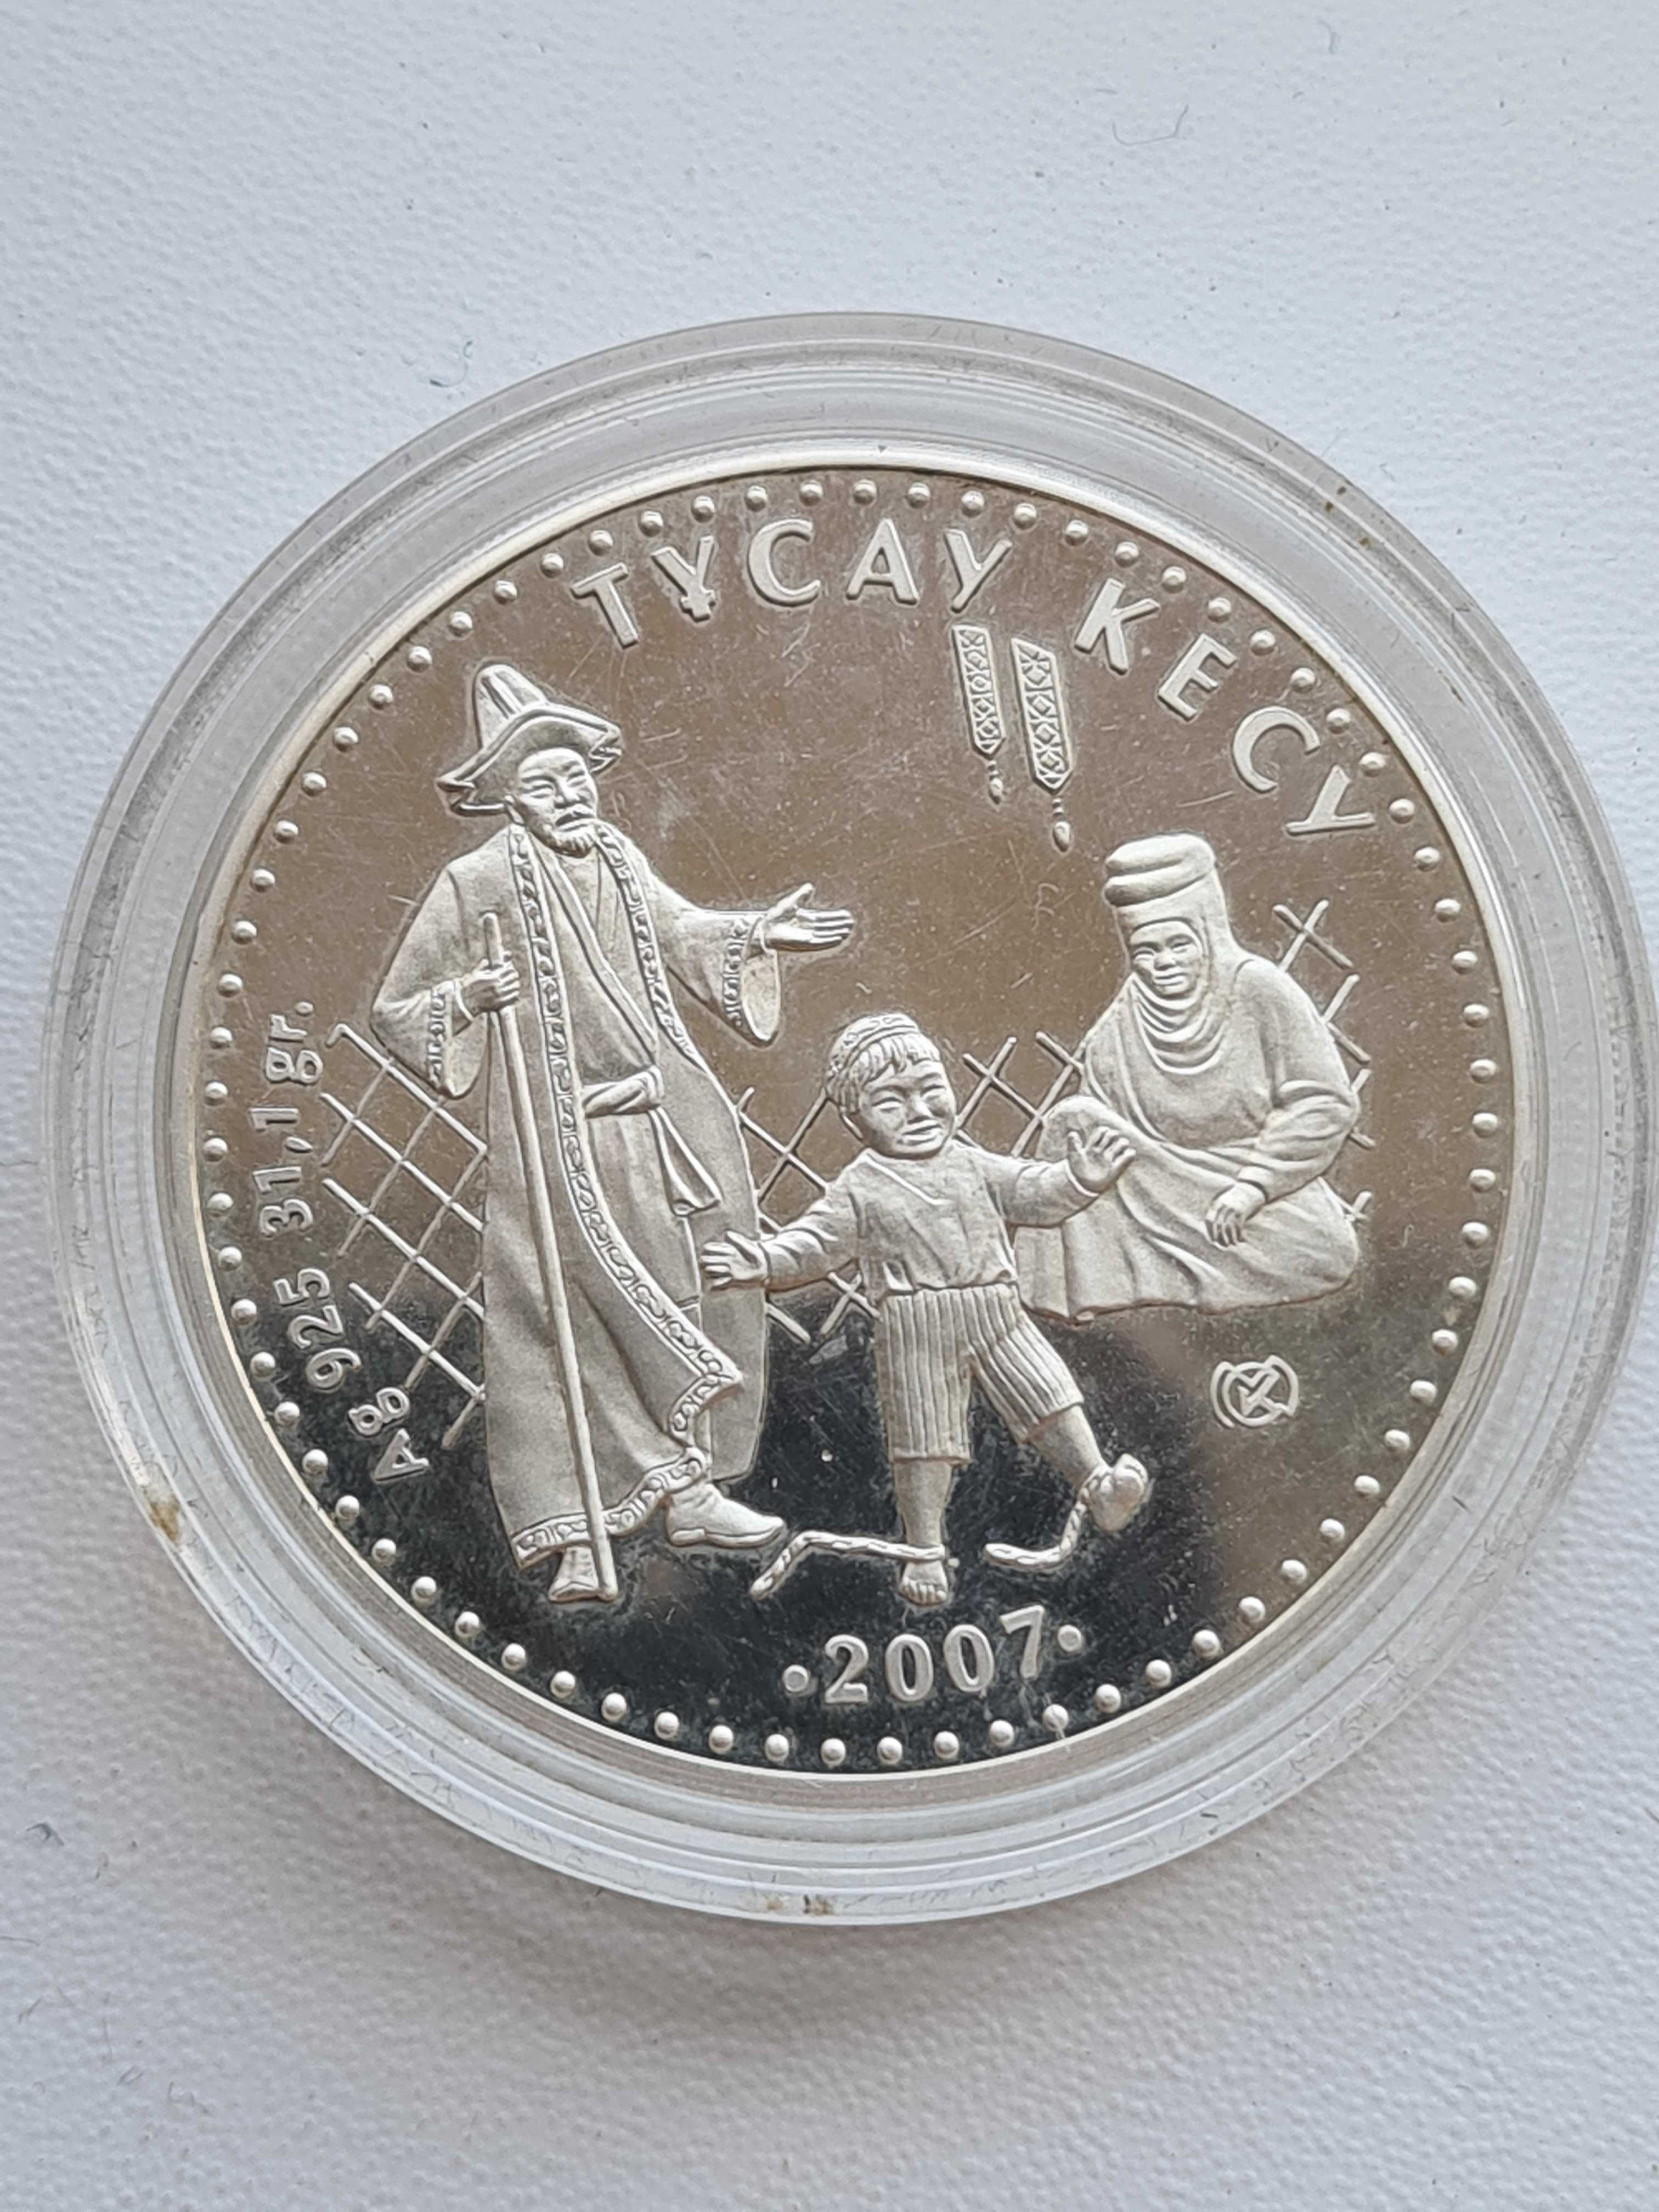 Монета "Тусау кесу".